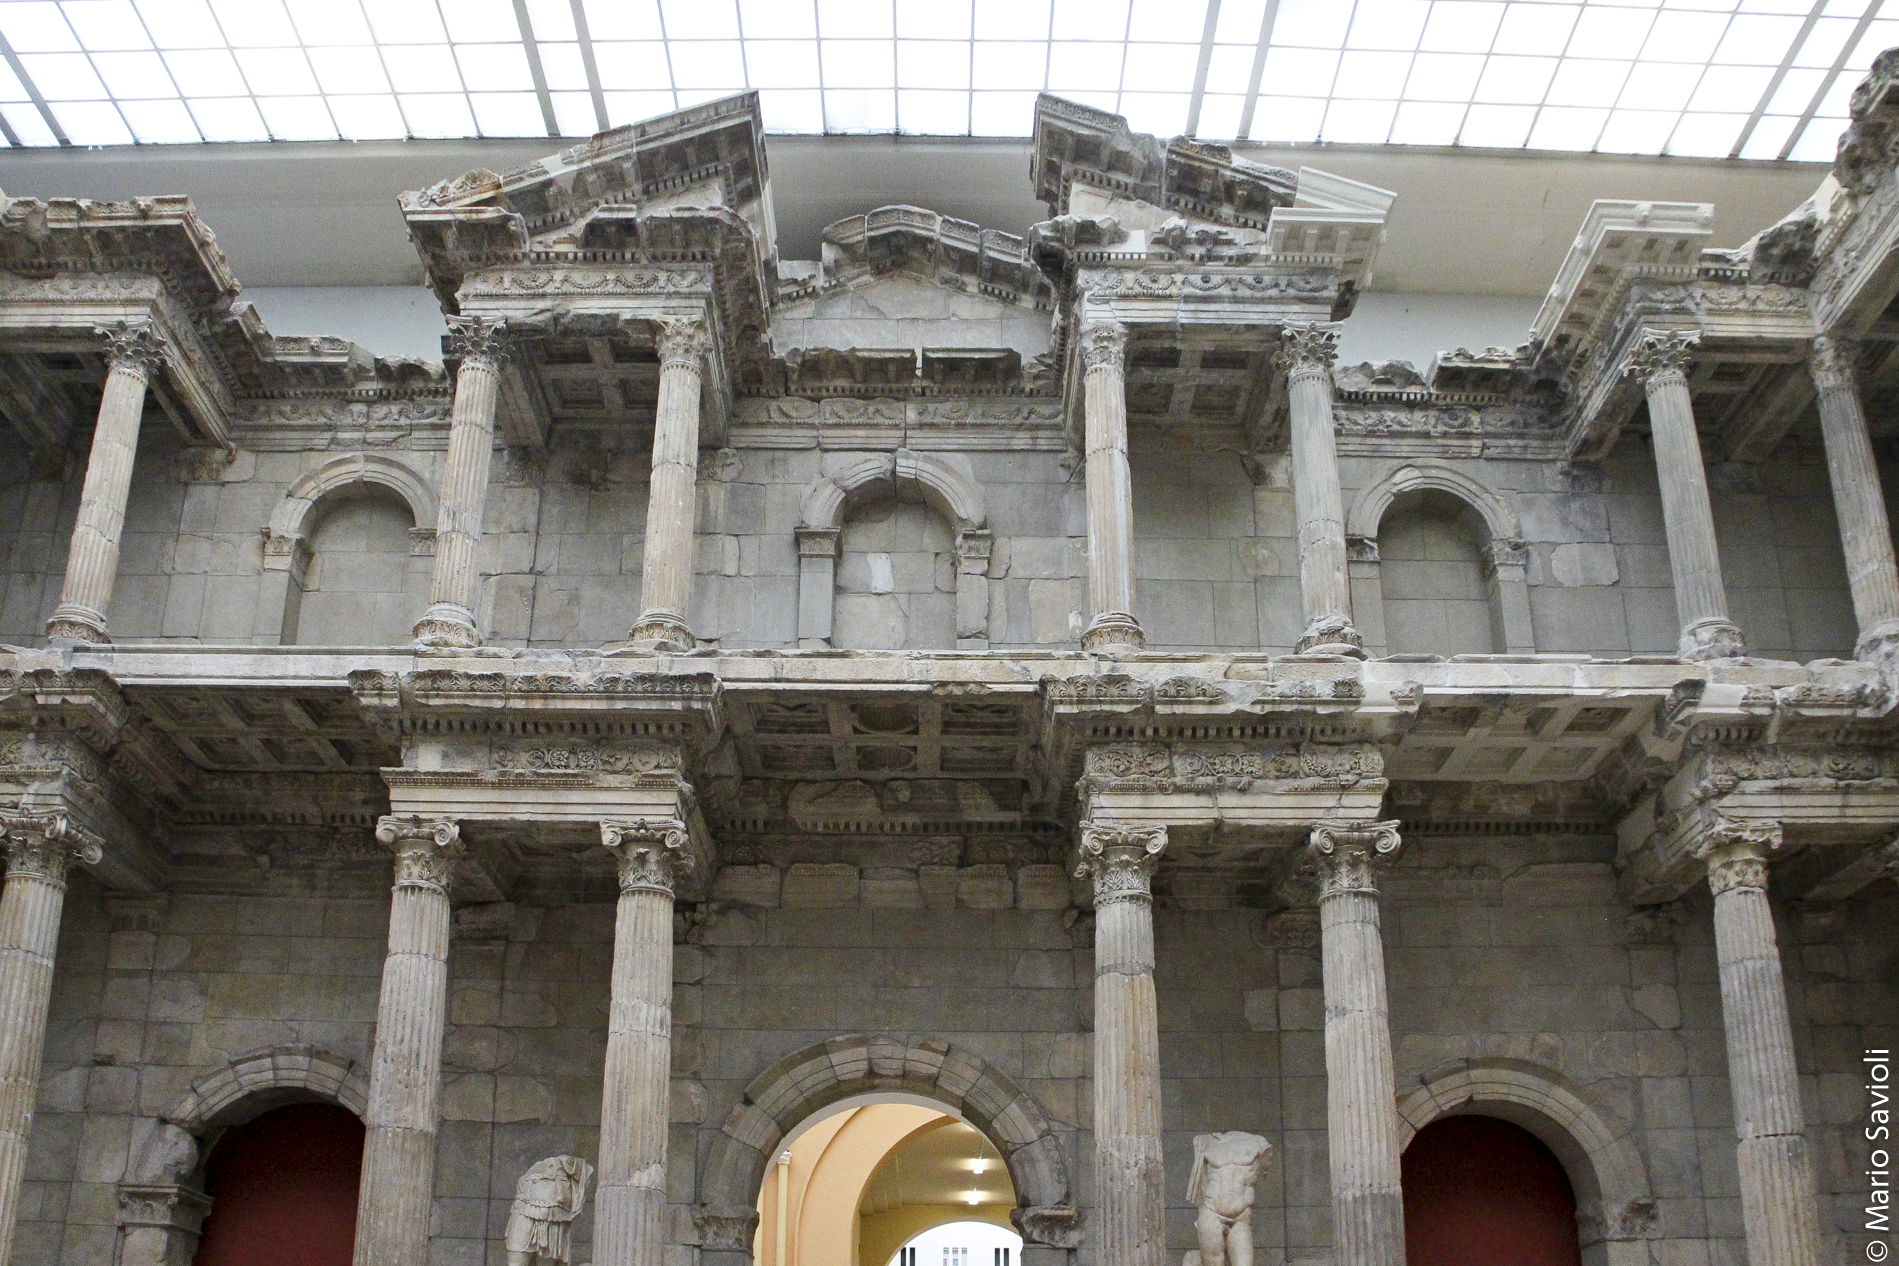 Berlino - Pergamon Museum